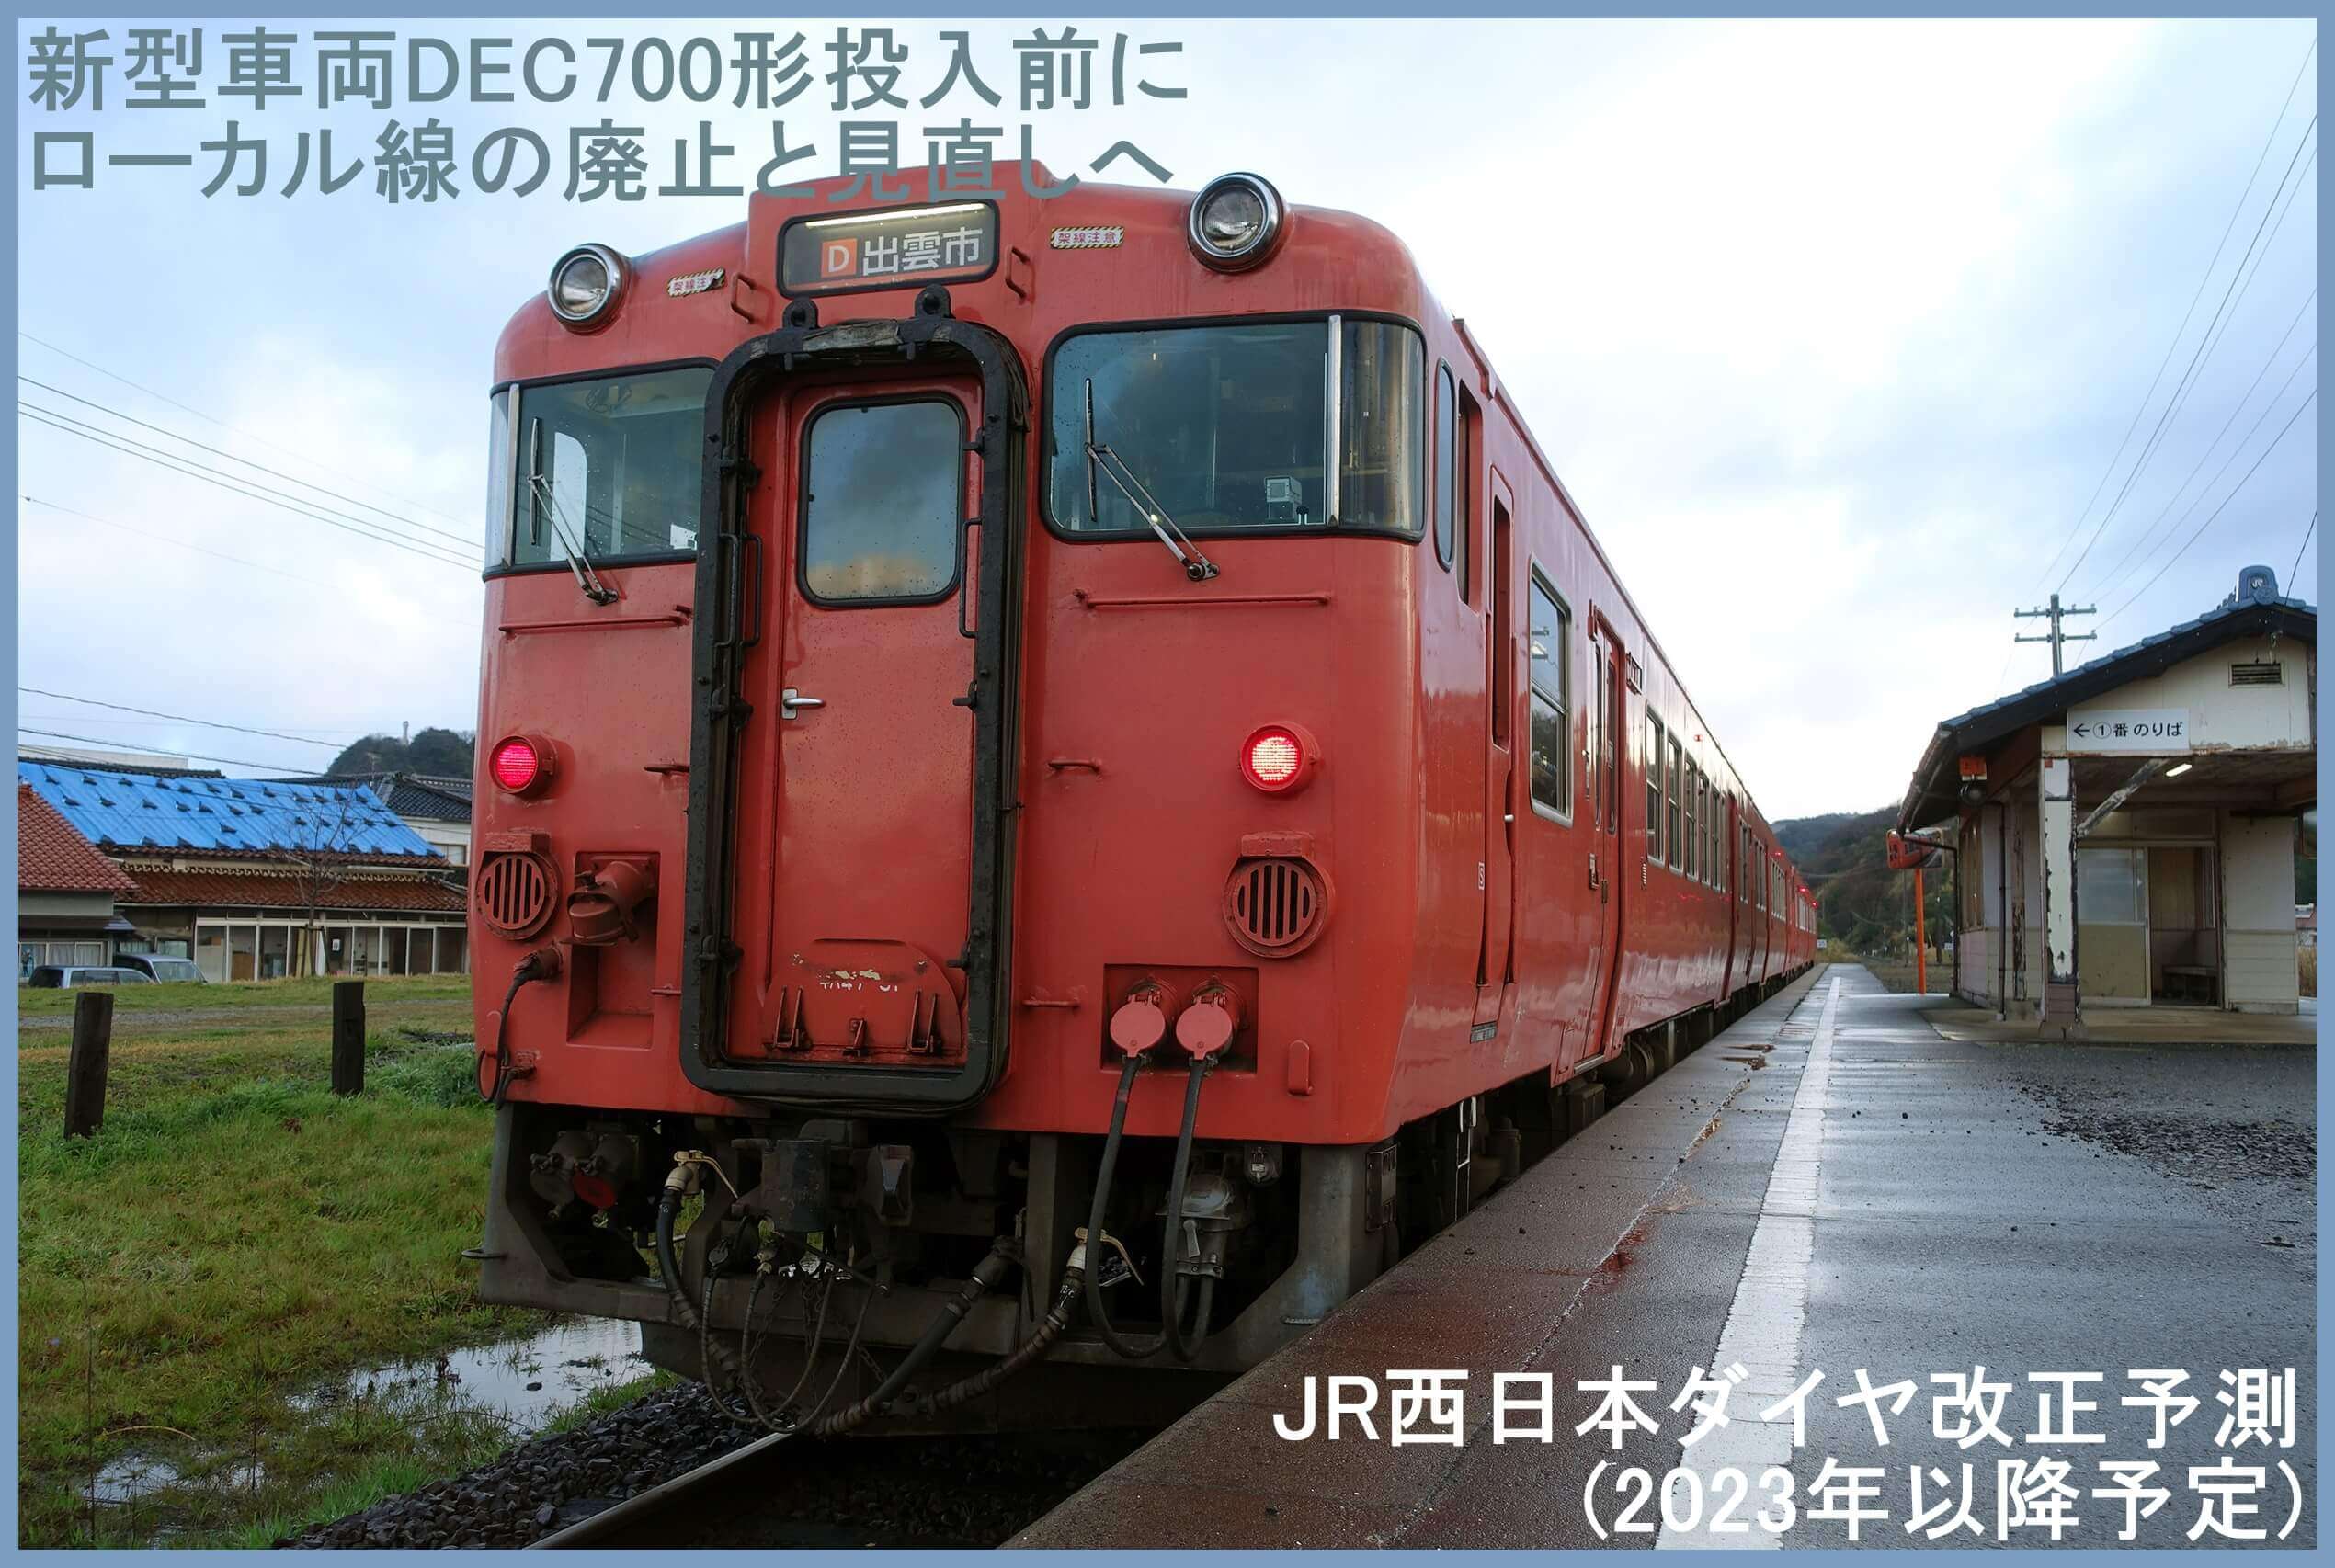 新型車両DEC700形投入前にローカル線の廃止と見直しへ　JR西日本ダイヤ改正予測(2023年以降予定)